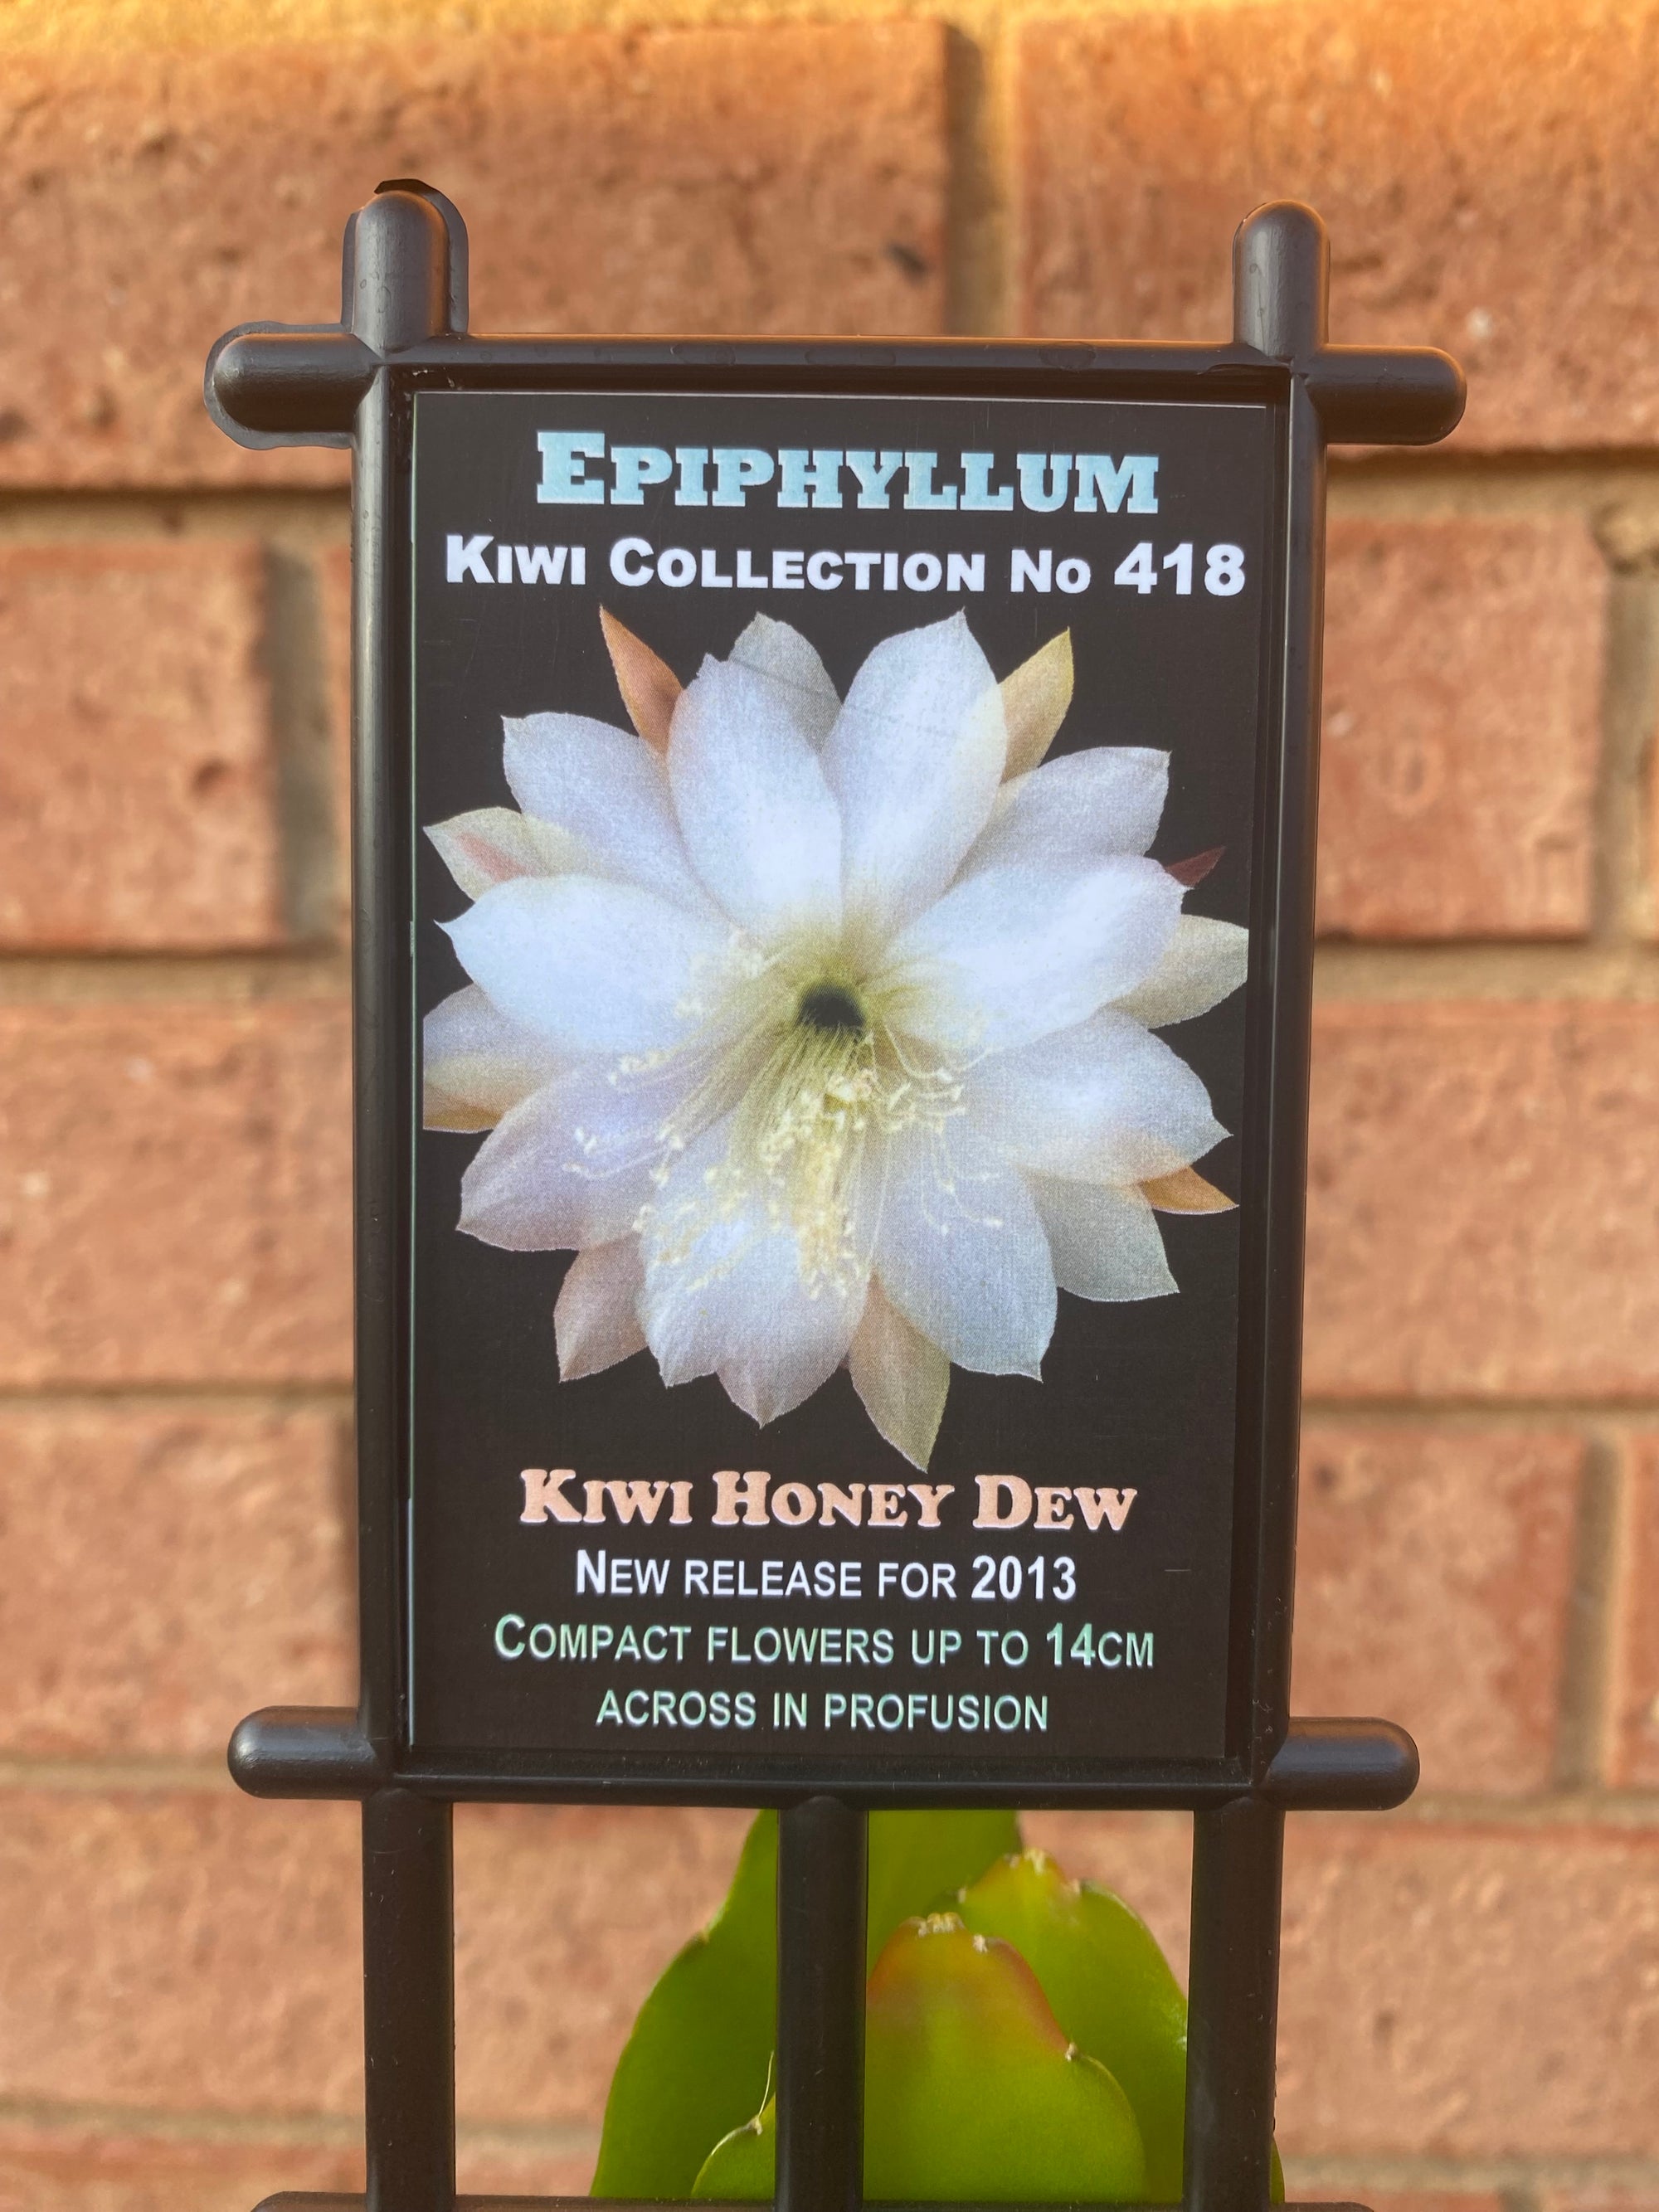 Epiphyllum 'The Orchid Cactus' - Kiwi Honey Dew - Kiwi Collection No. 418